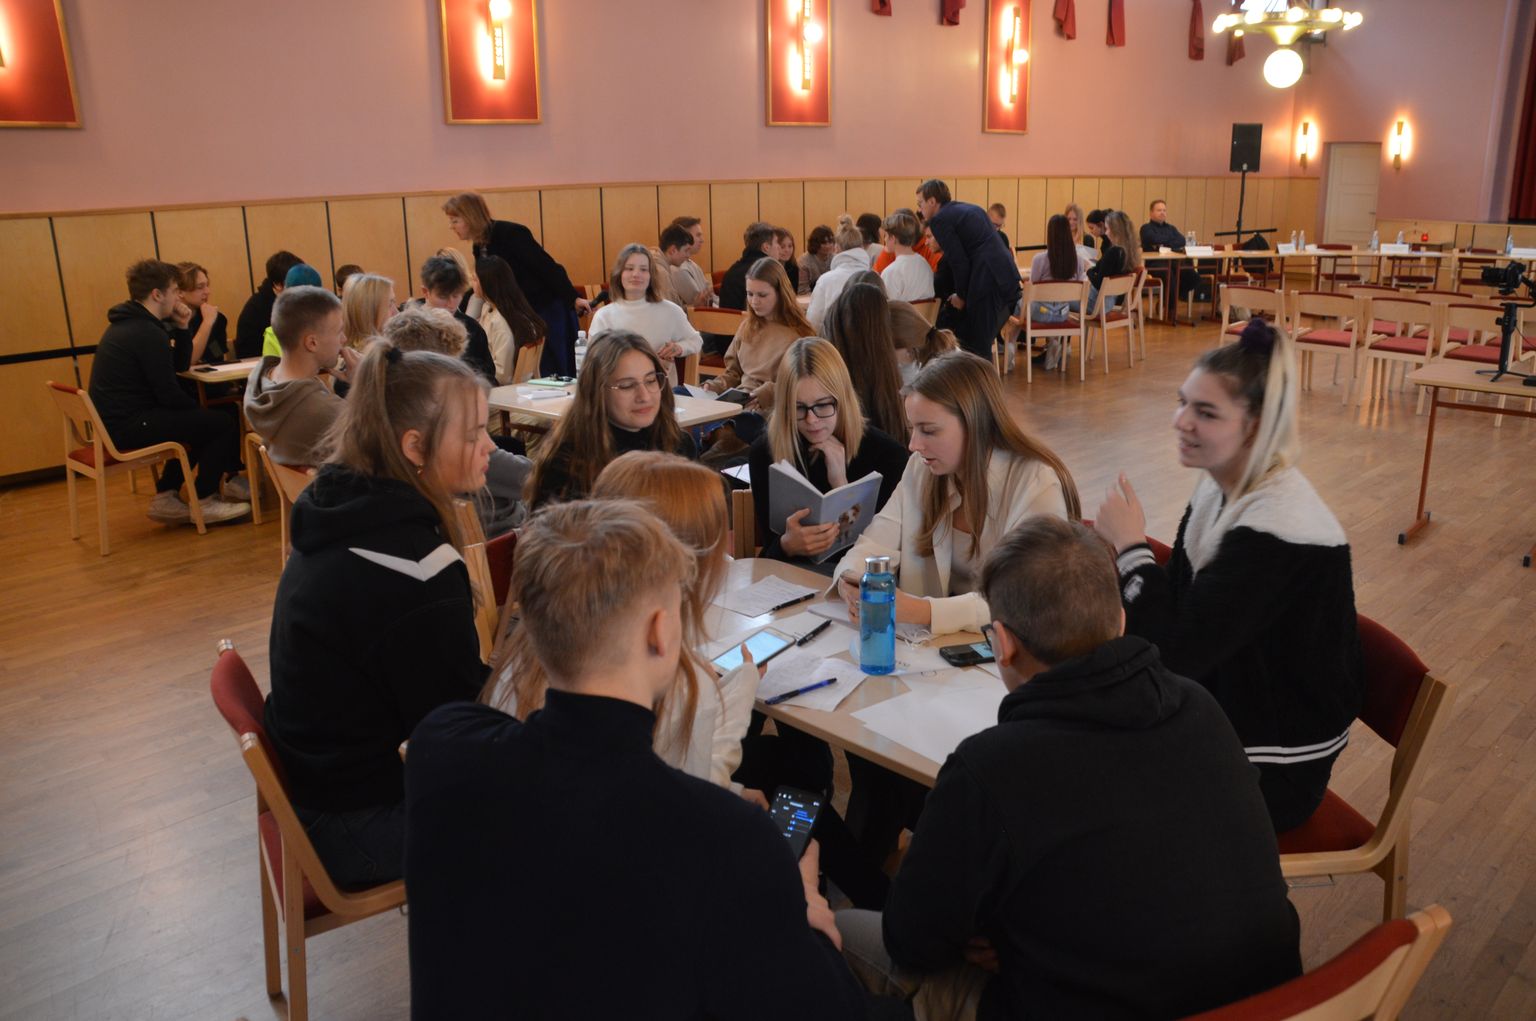 Teadliku valija päev Otepää gümnaasiumis. Õpilased küsimusi koostamas.